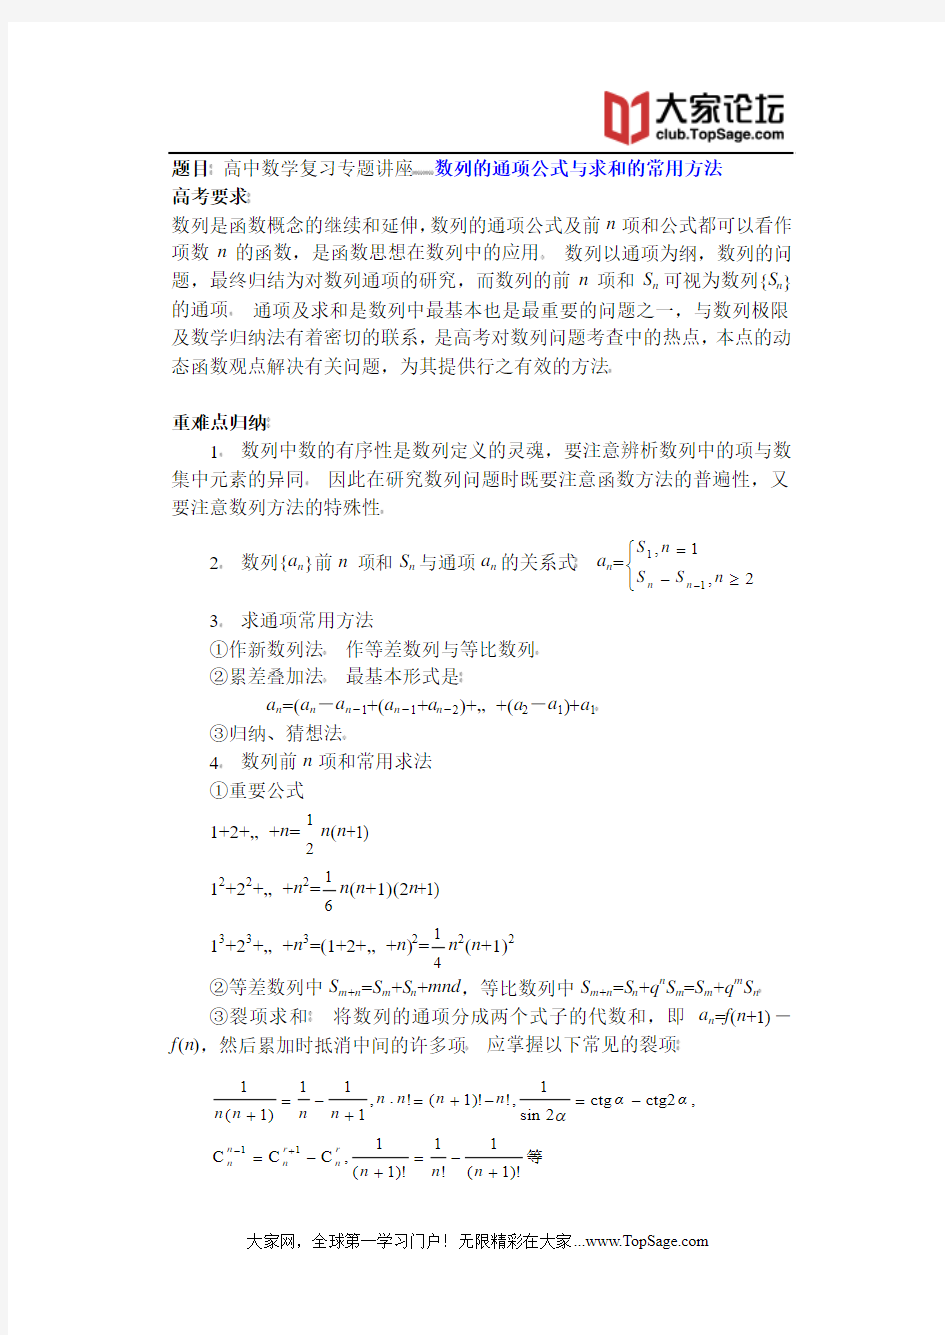 高中数学复习专题讲座(第13讲)_数列的通项公式与求和的常用方法